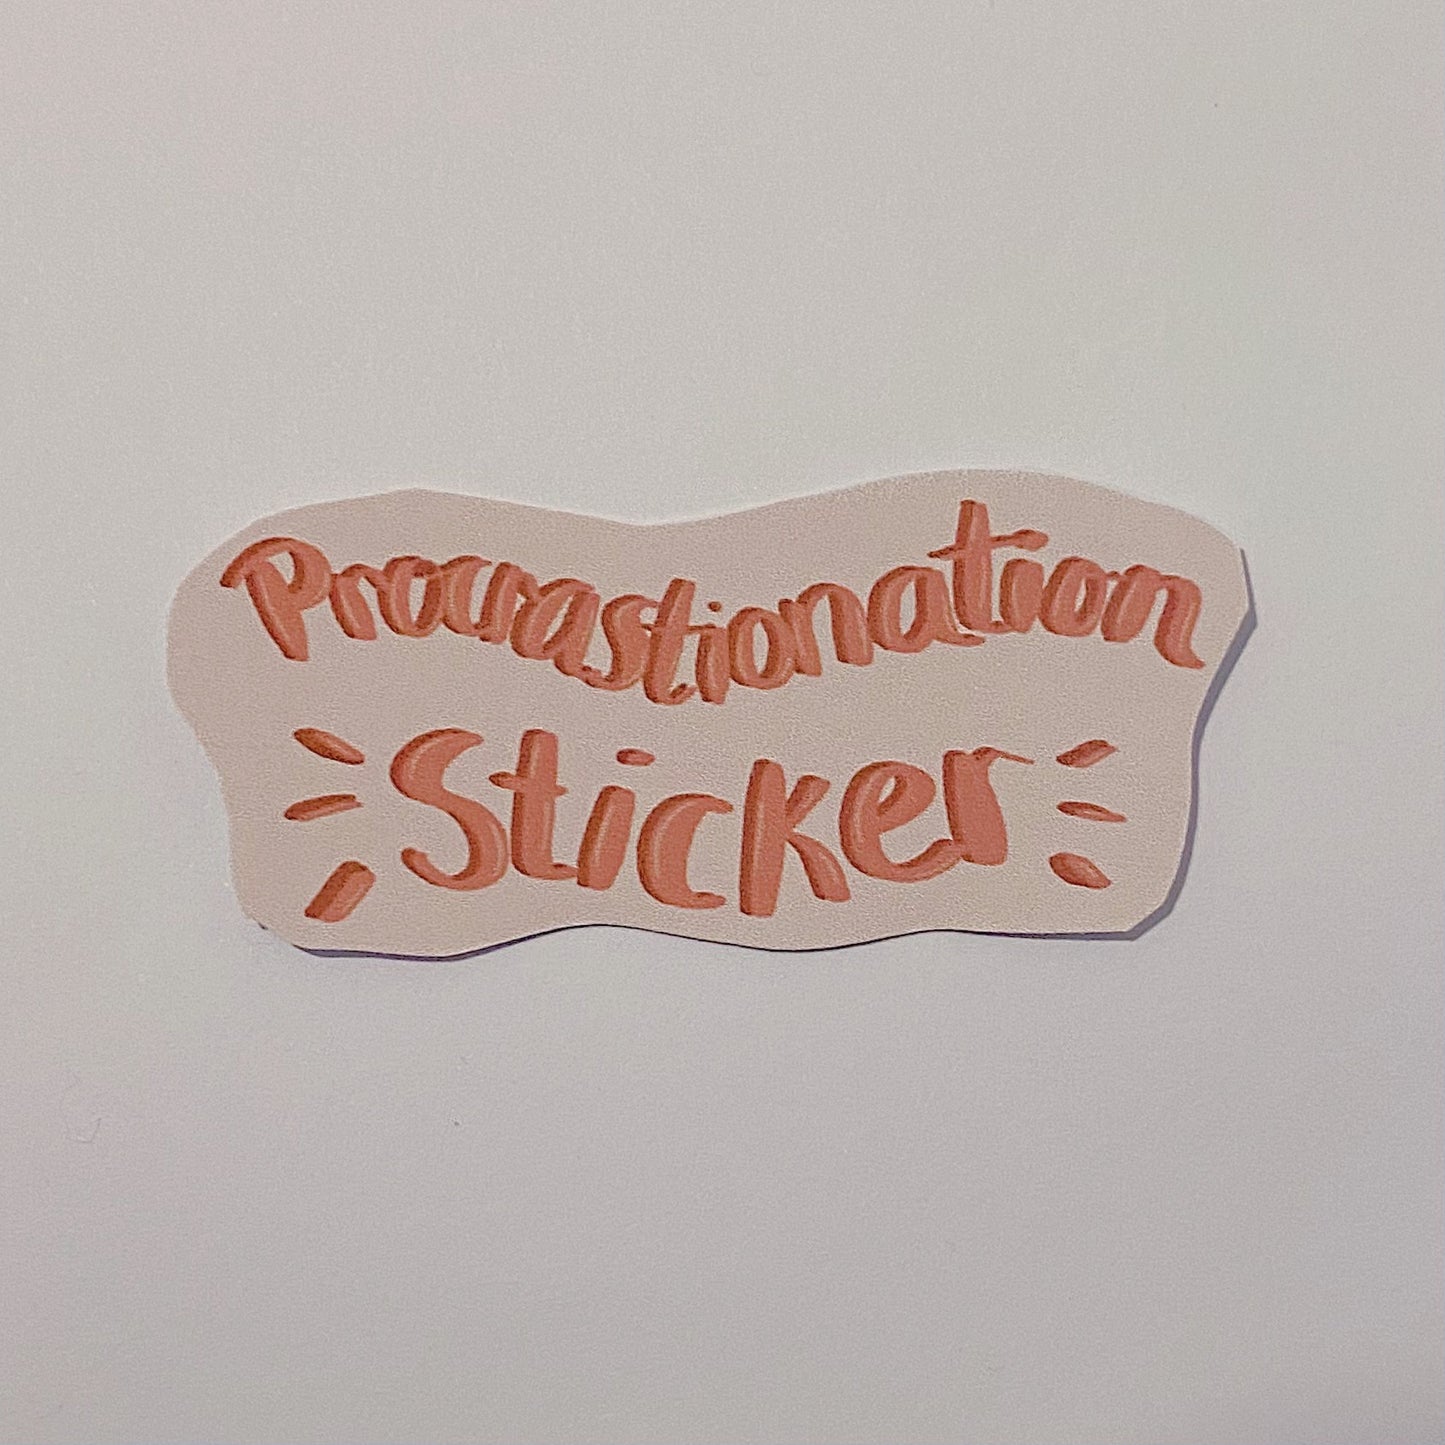 Procrastination Sticker